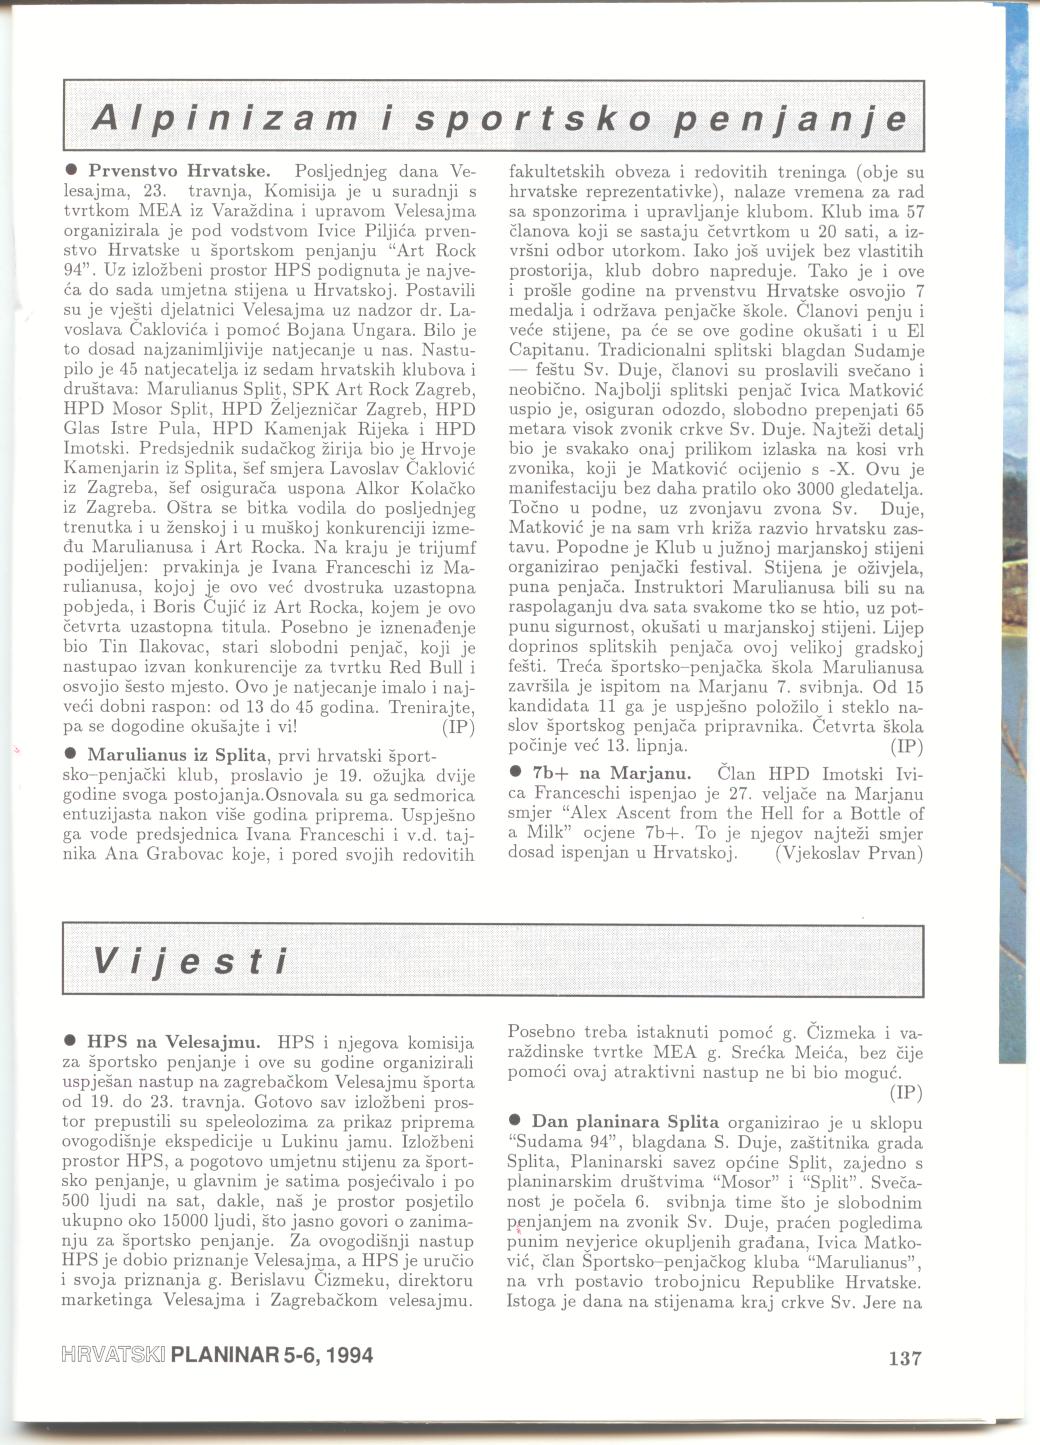 Hrvatski Planinar 1994.